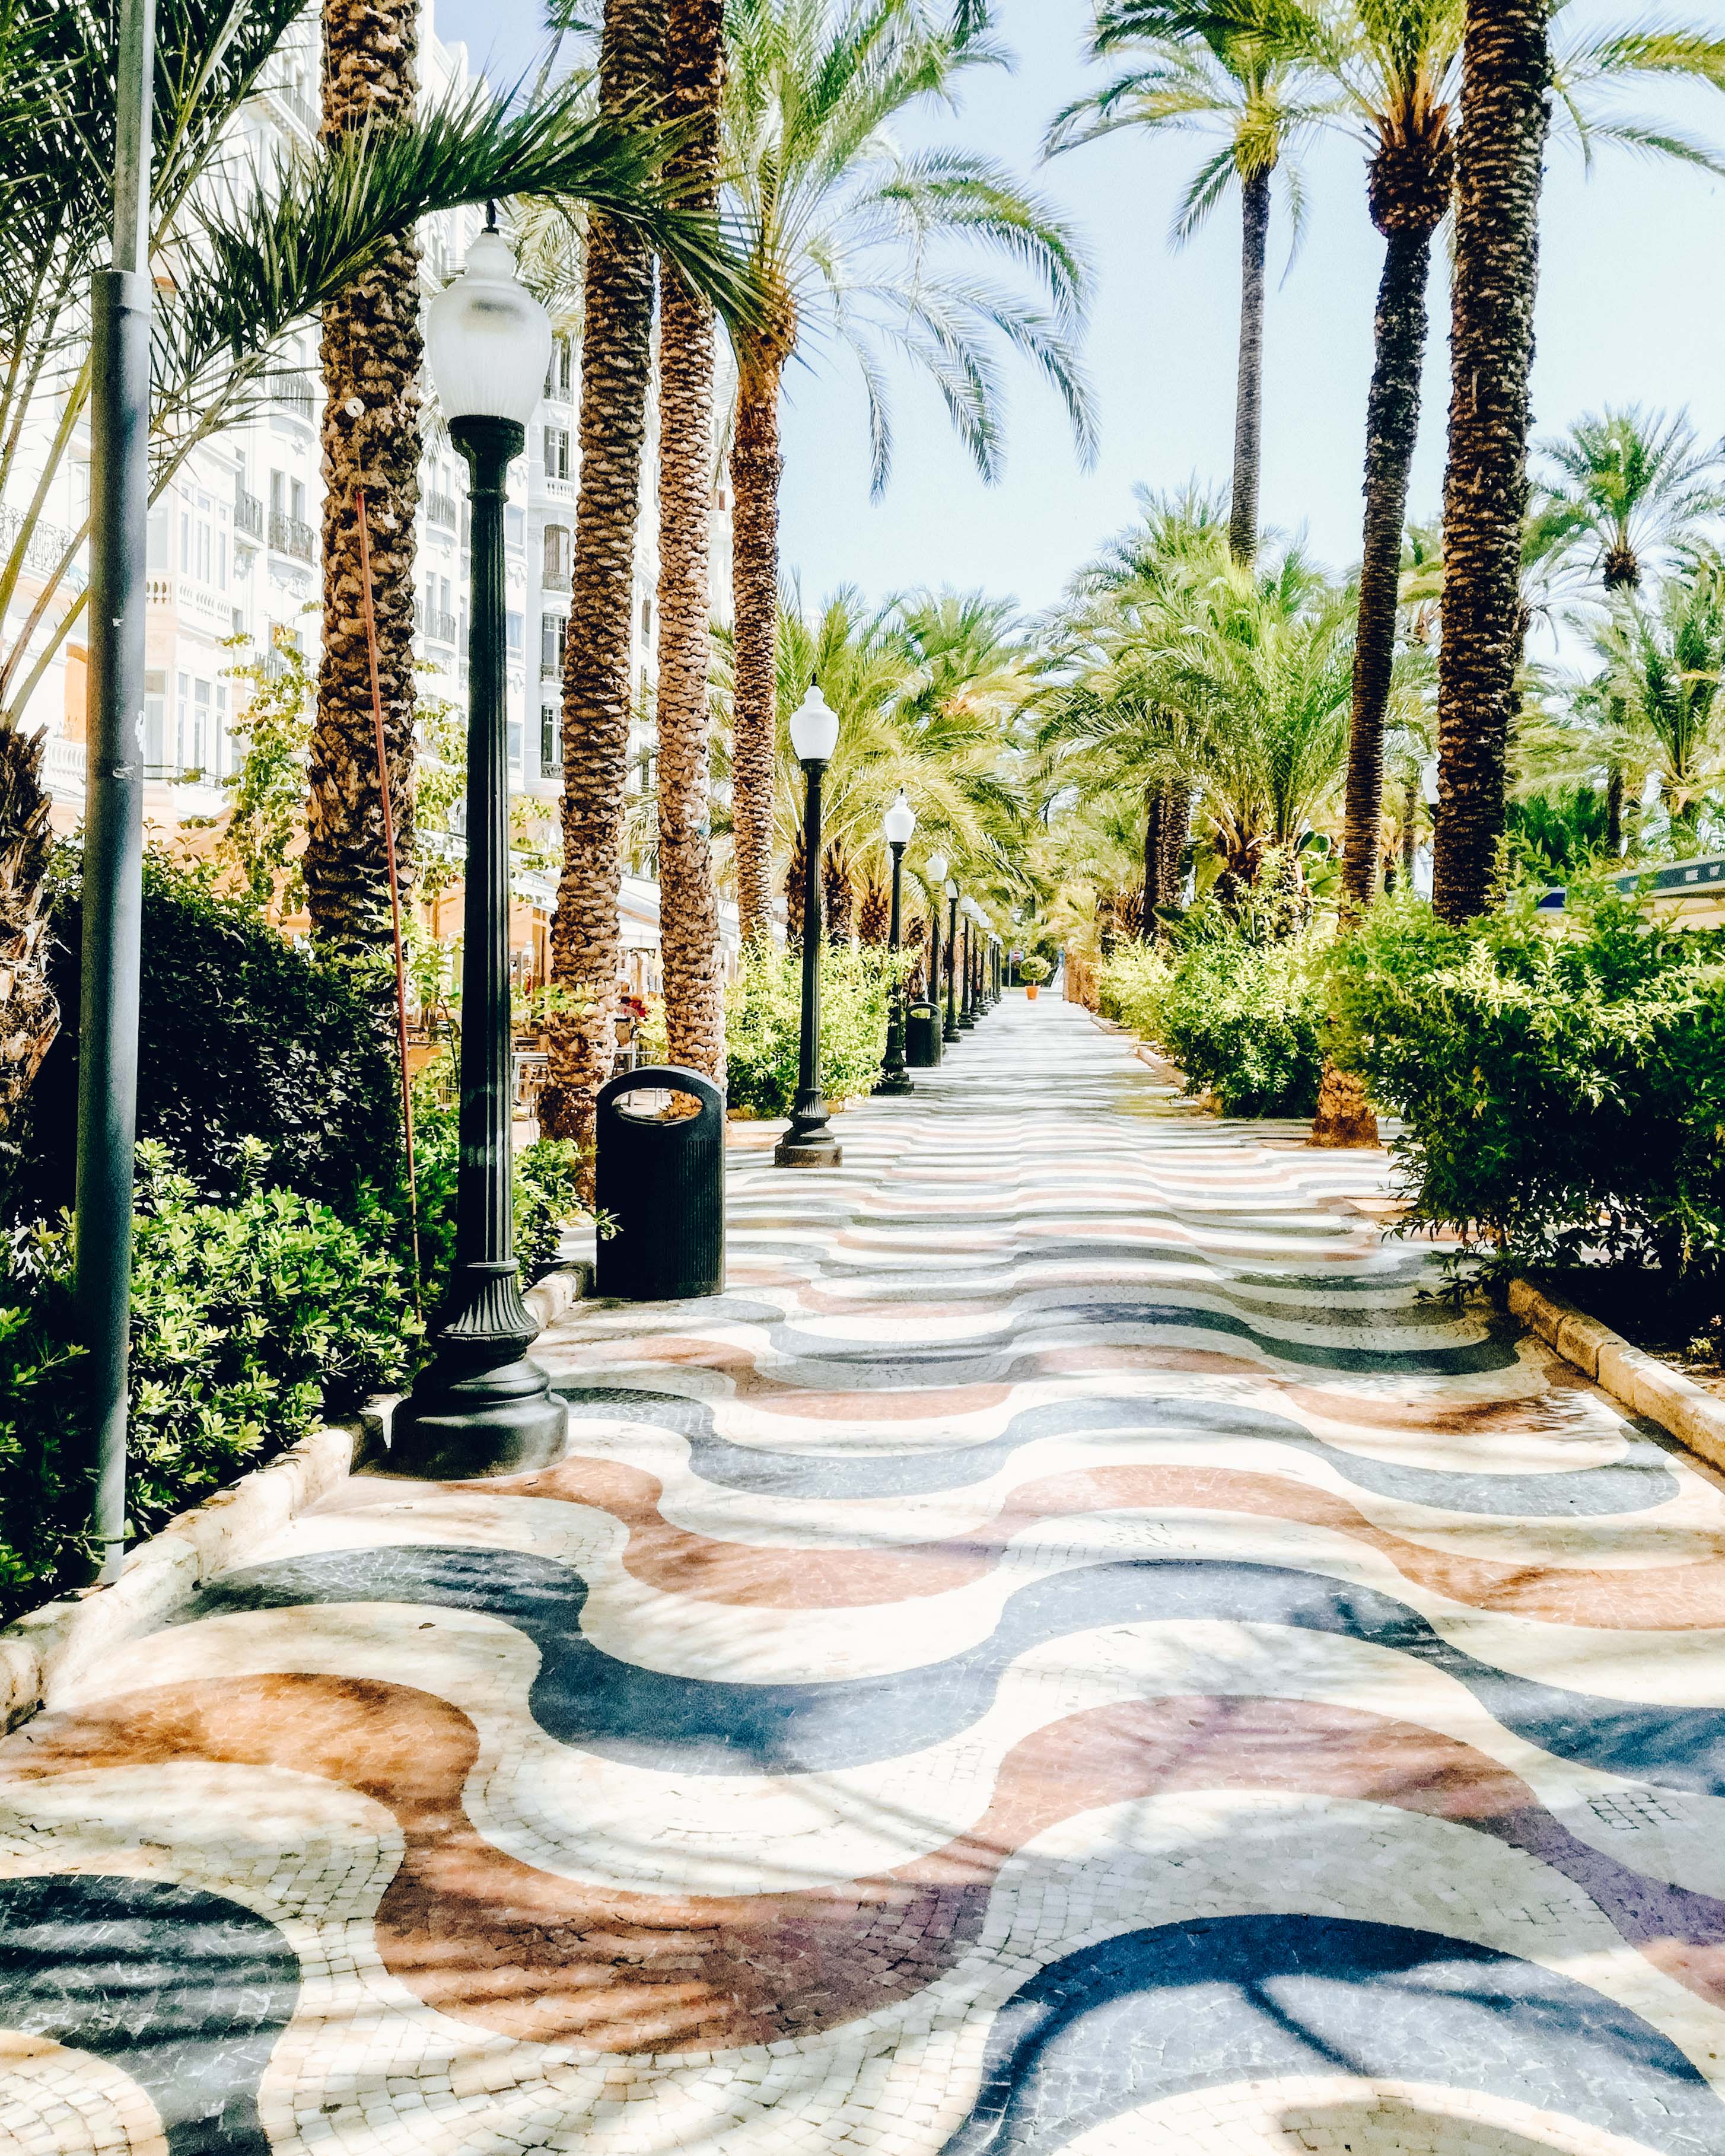 Wavy mosaics in the pavement of Explanada de España in Alicante.